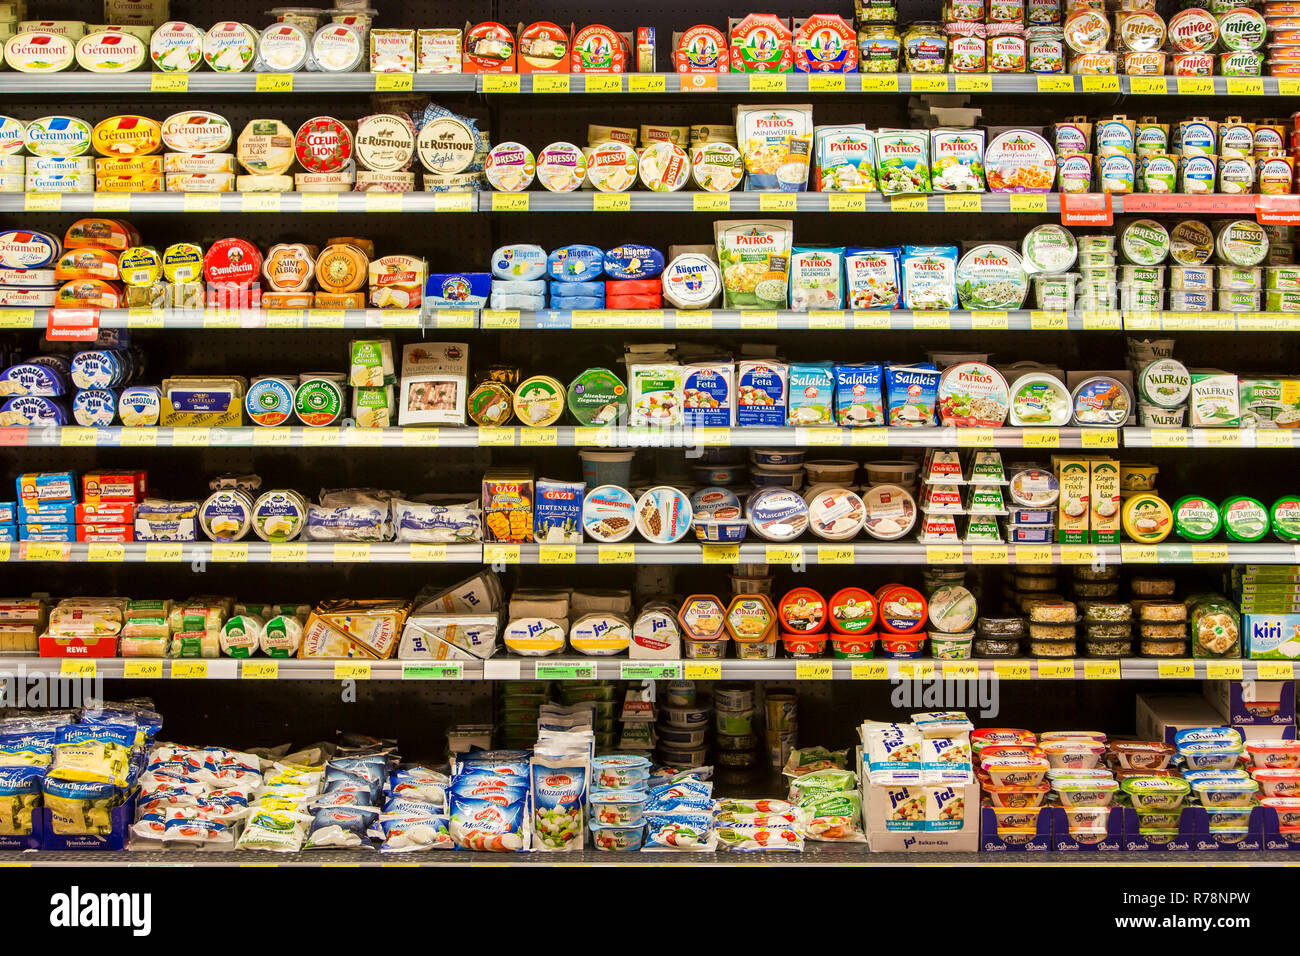 Ripiano refrigerato con vari prodotti caseari, supermercato, Germania Foto Stock